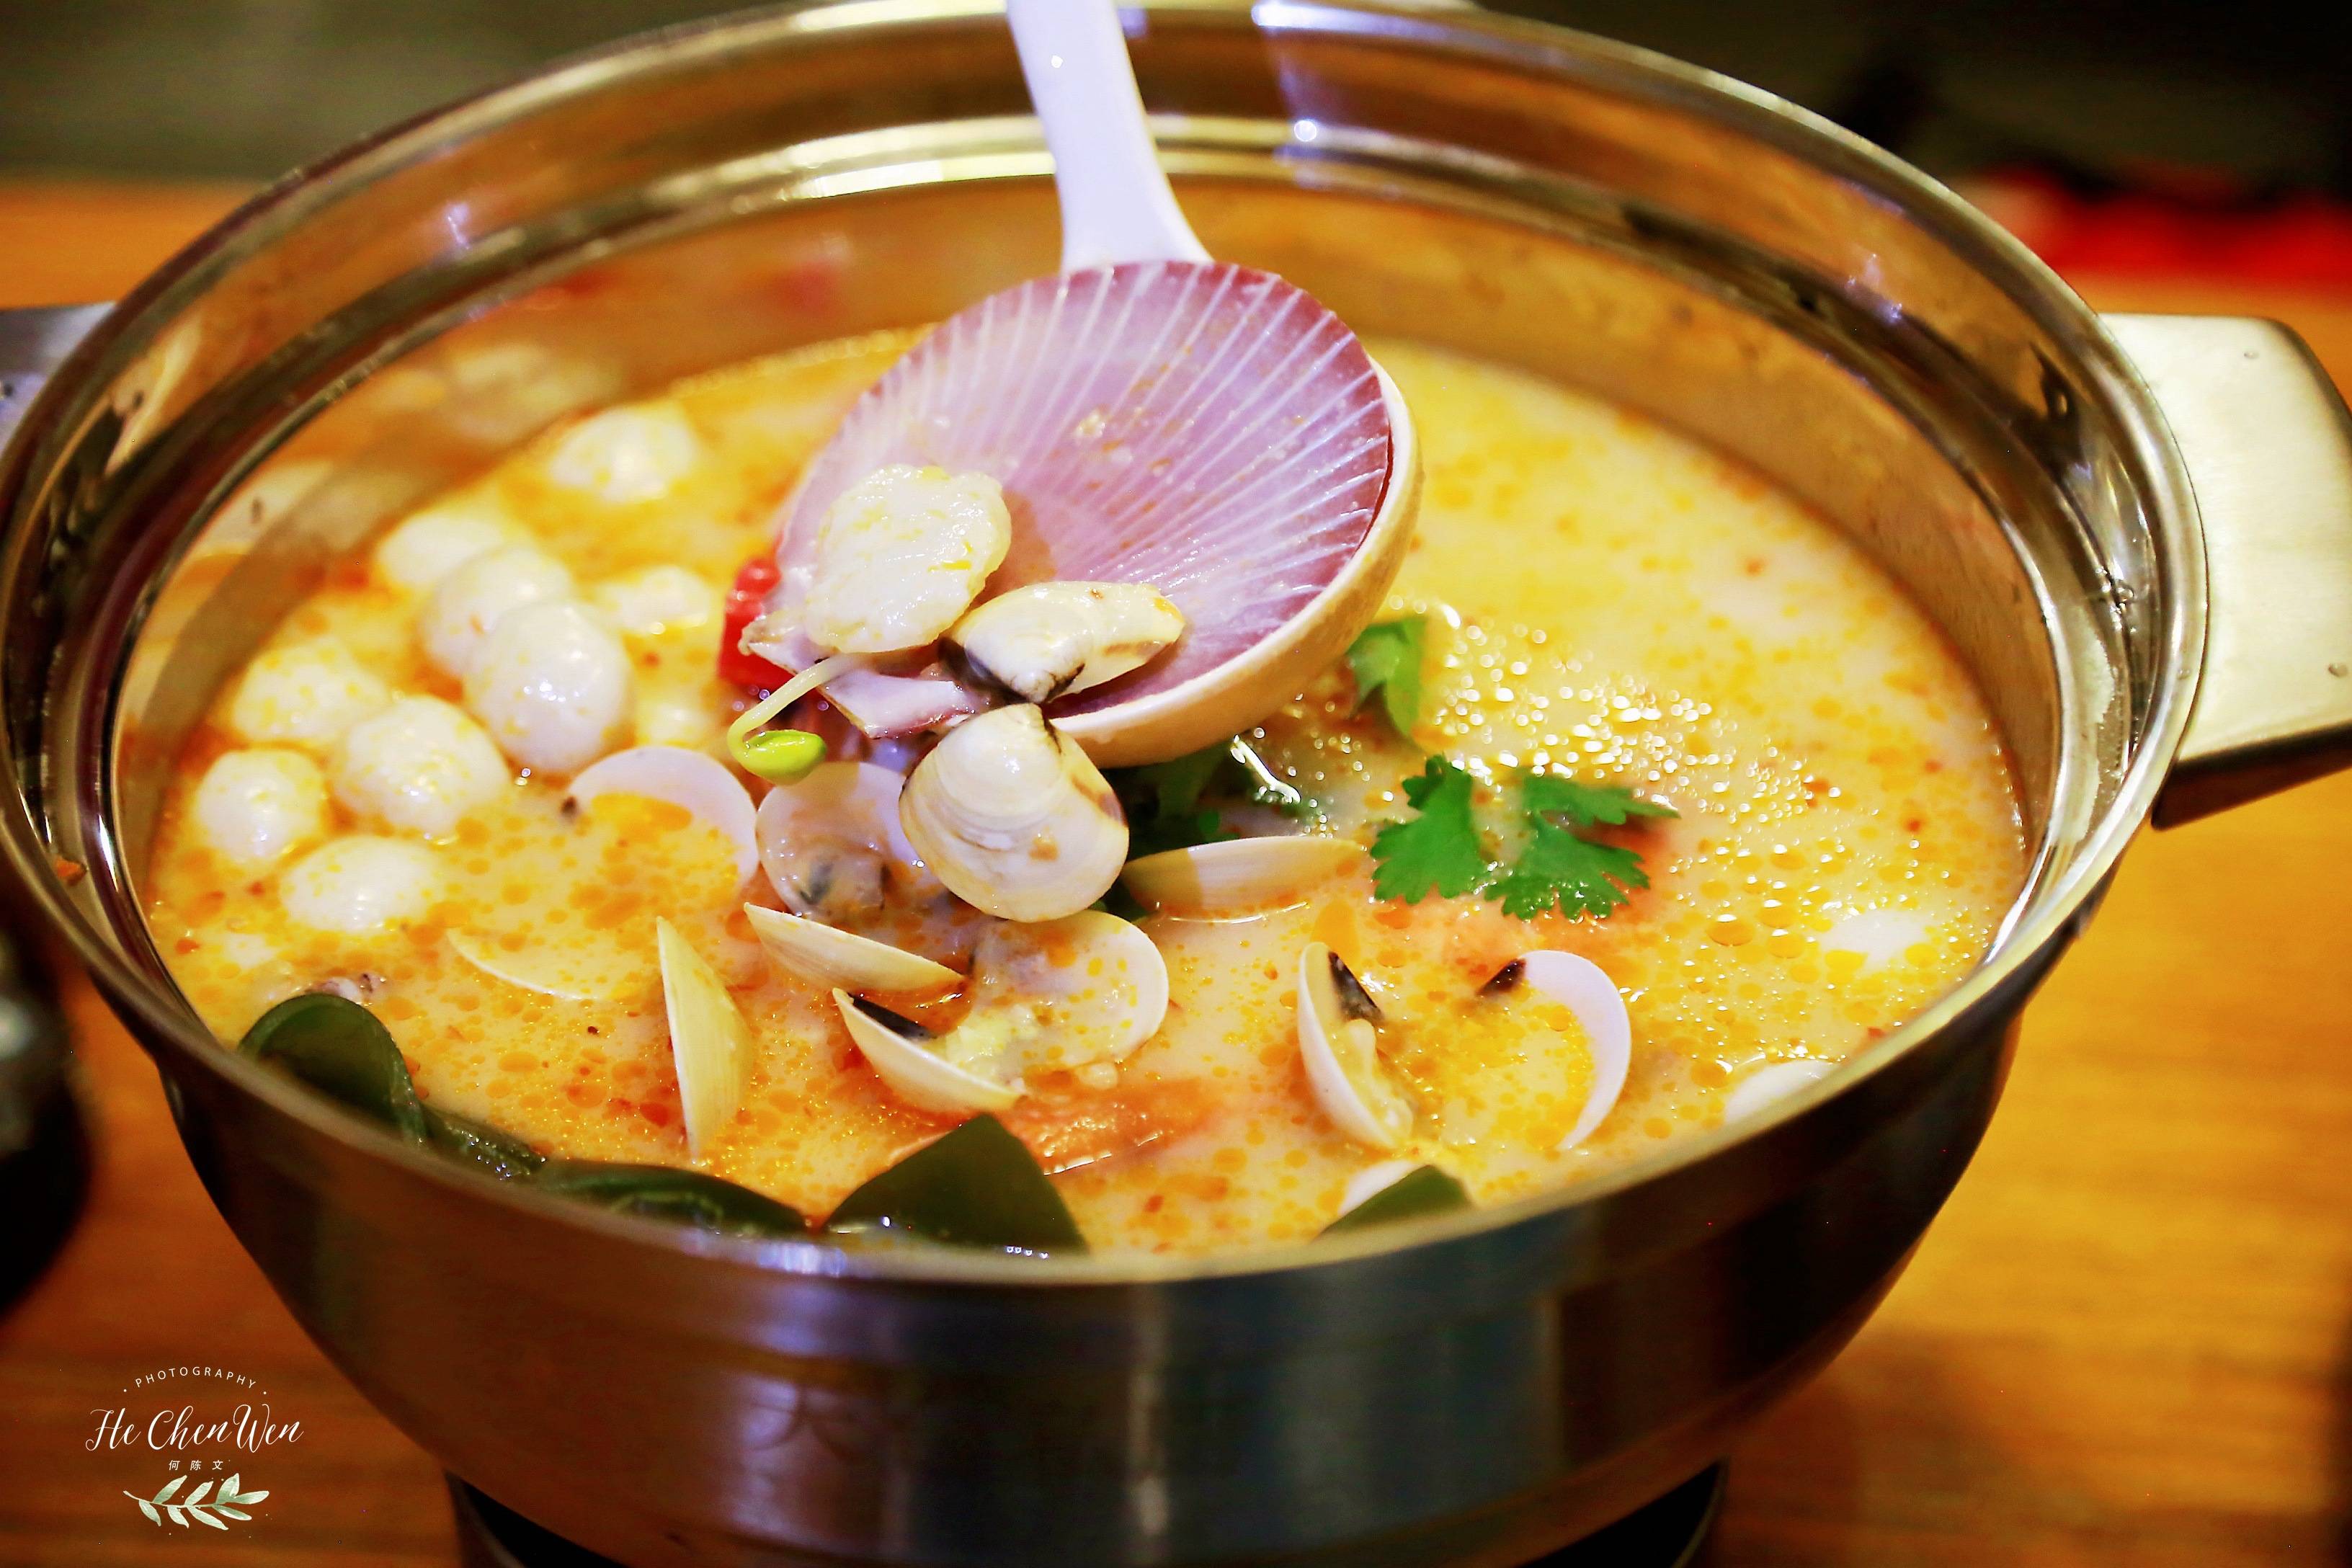 哪位大侠能教几样汤的做法，越简单越素越好。海鲜的可以。